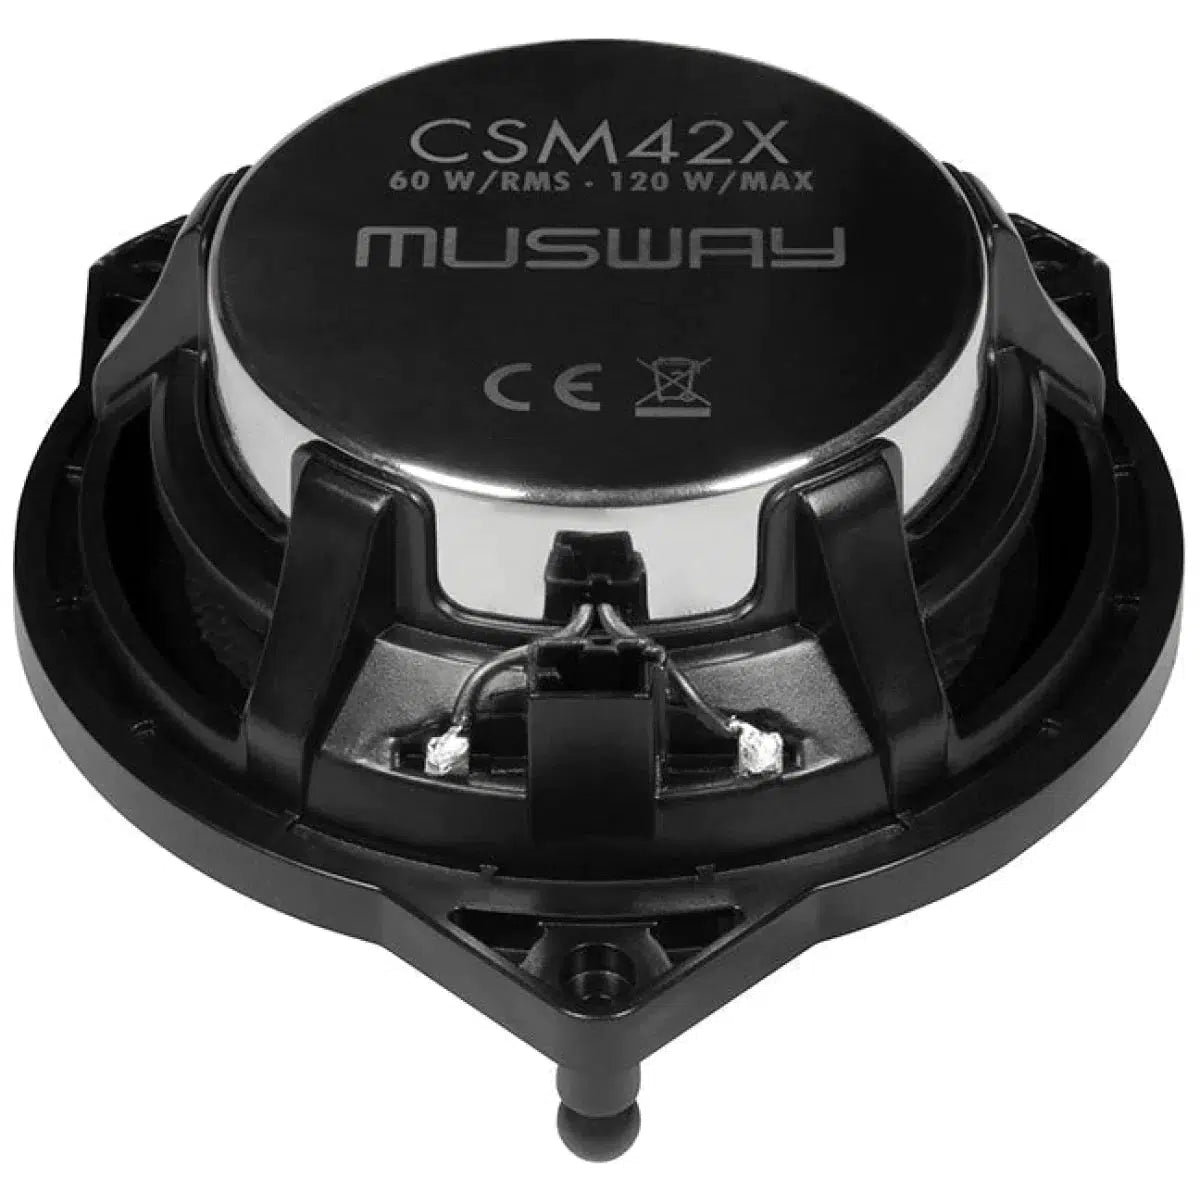 Musway-CSM-42X-Mercedes-Coaxial-Masori.fr